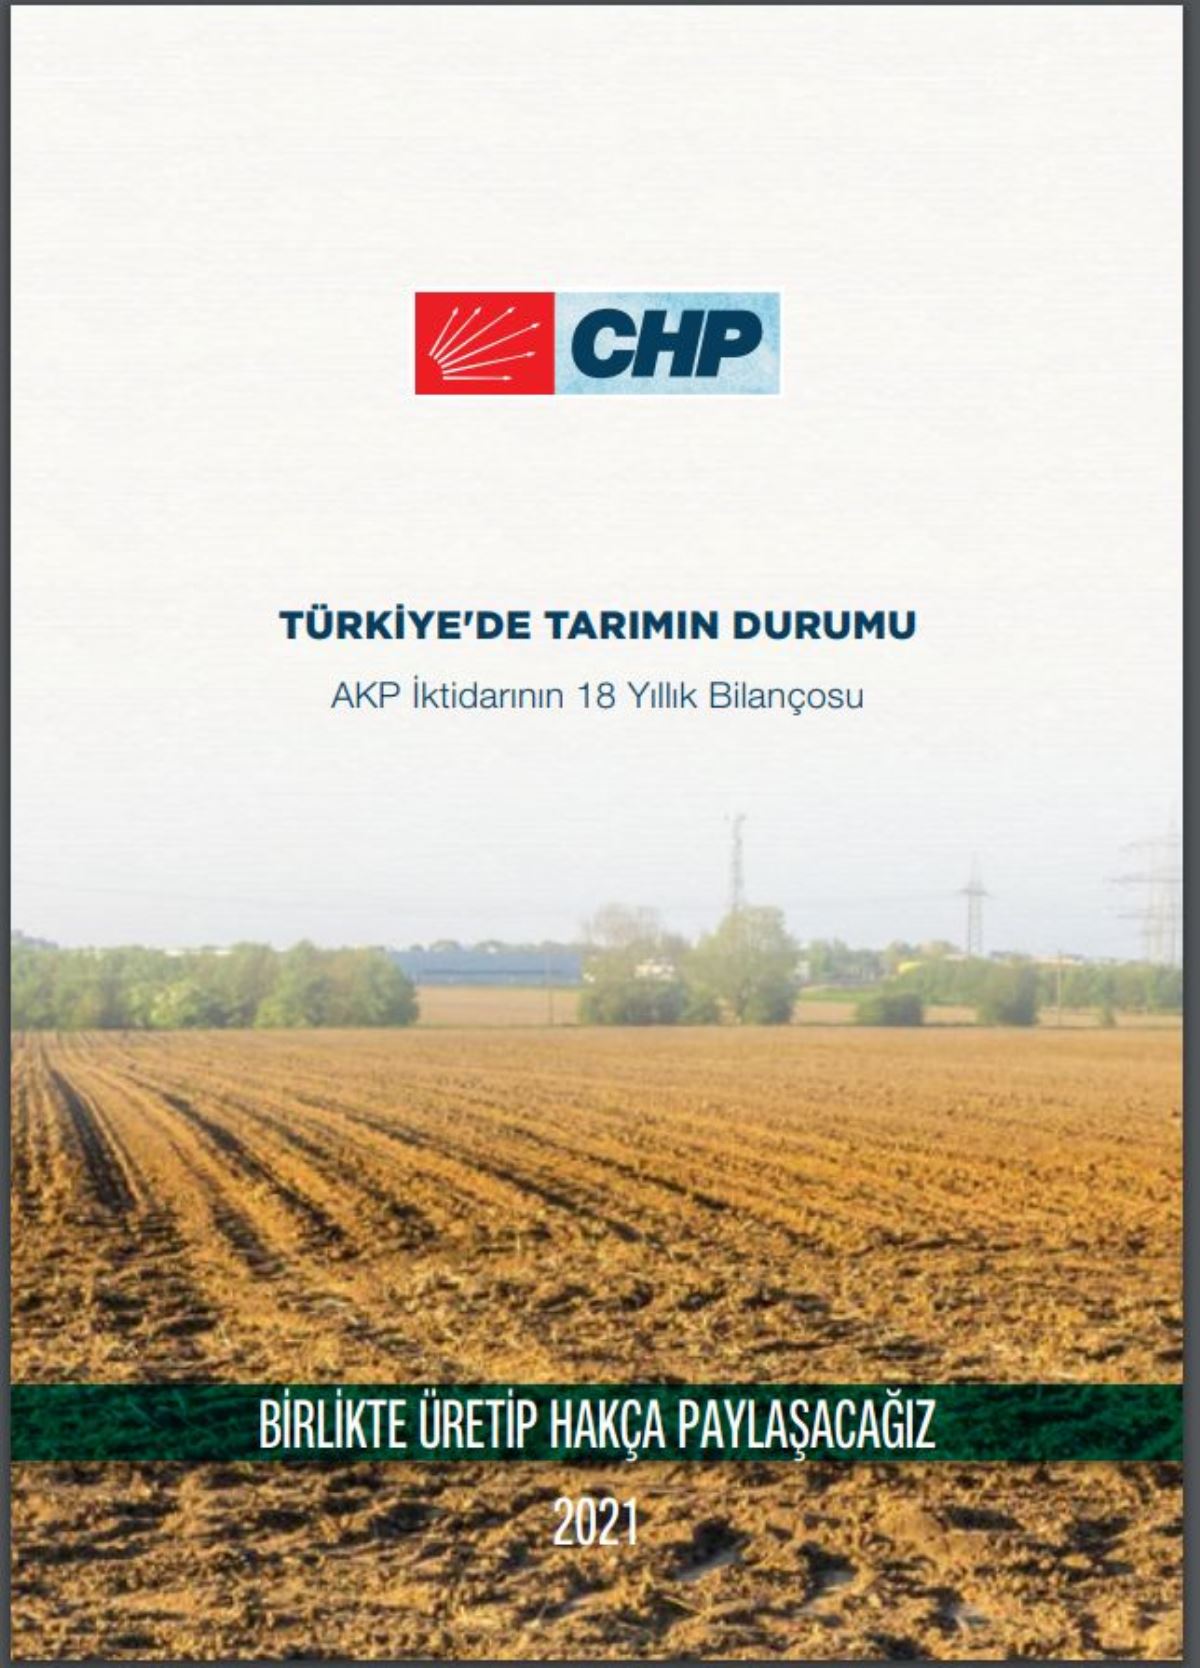 CHP, AKP iktidarının tarımda 18 yıllık bilançosunu çıkardı